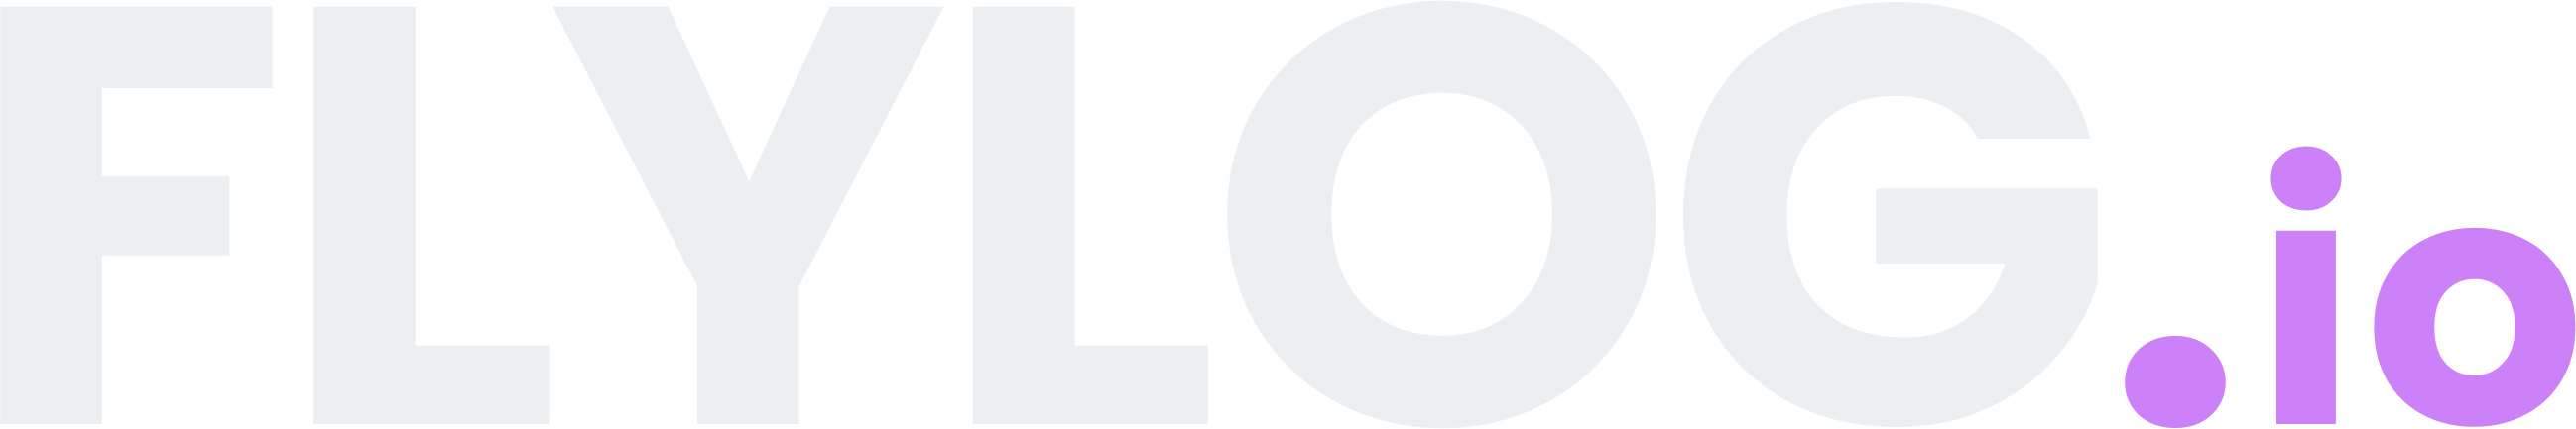 FLYLOG logo